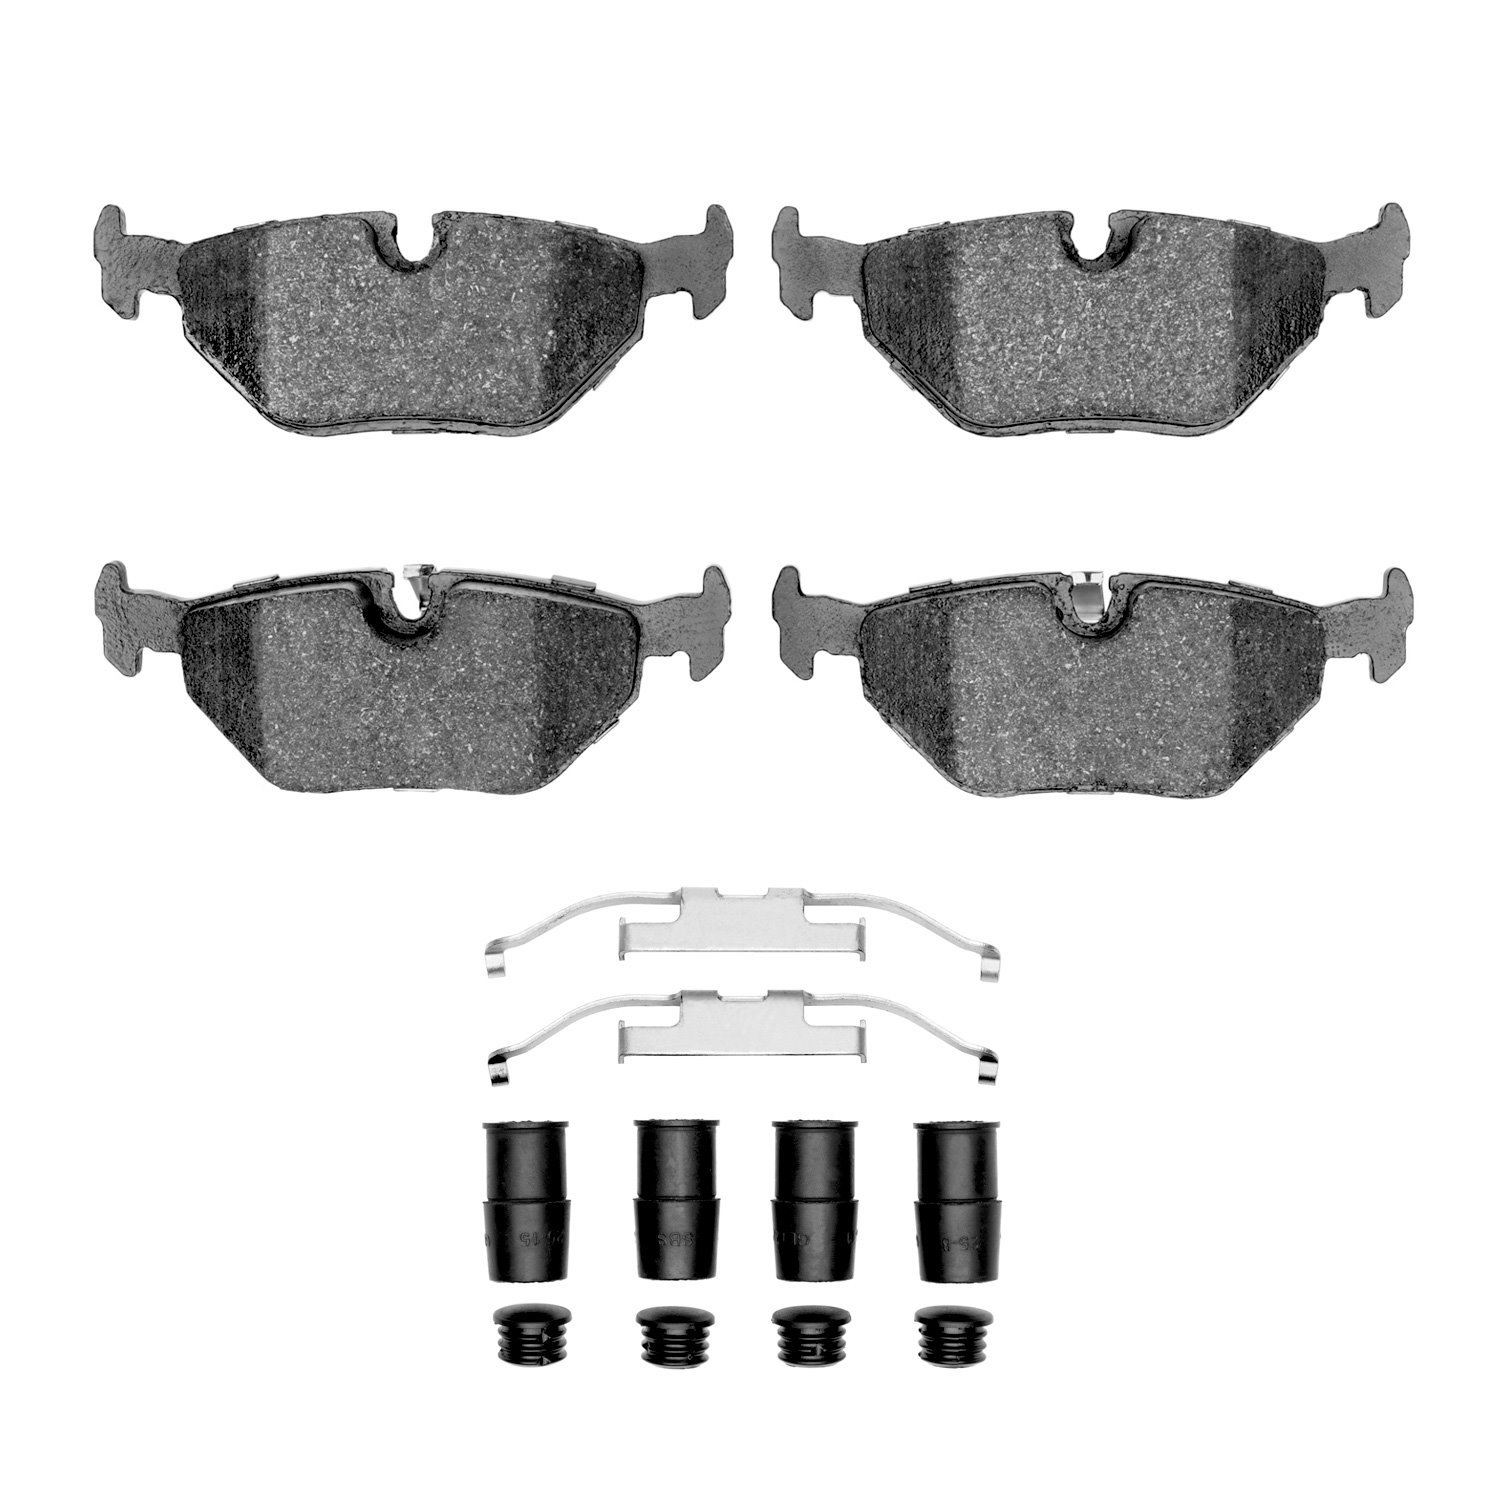 Semi-Metallic Brake Pads & Hardware Kit, 1991-2008 BMW, Position: Rear